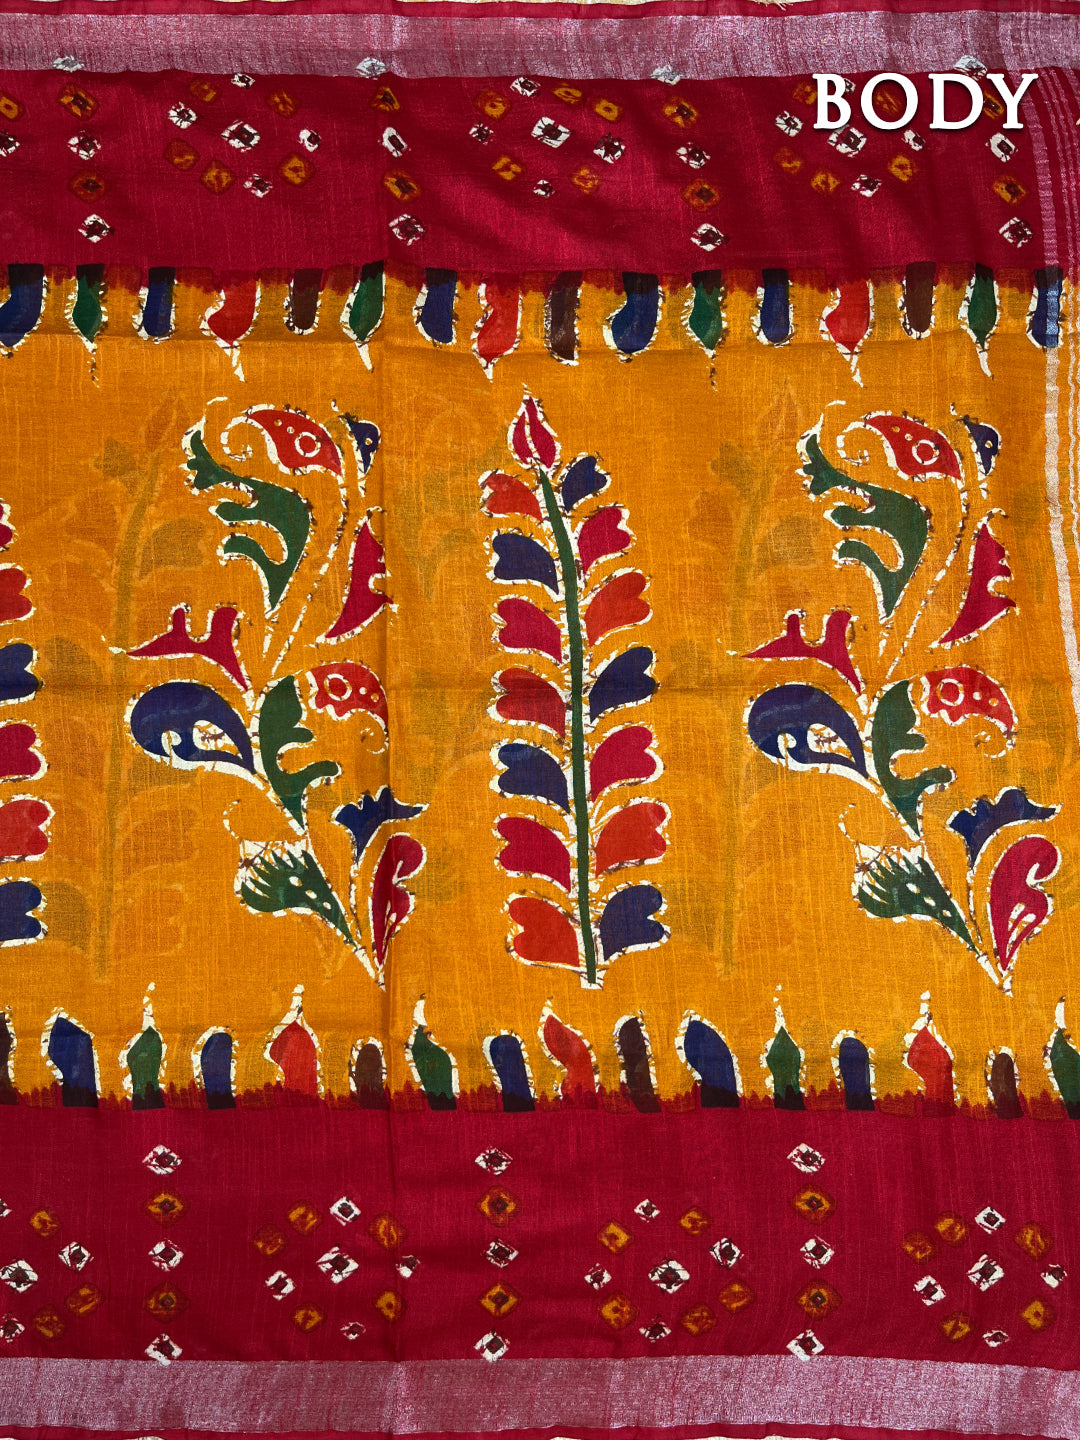 Red and yellow linen batik saree